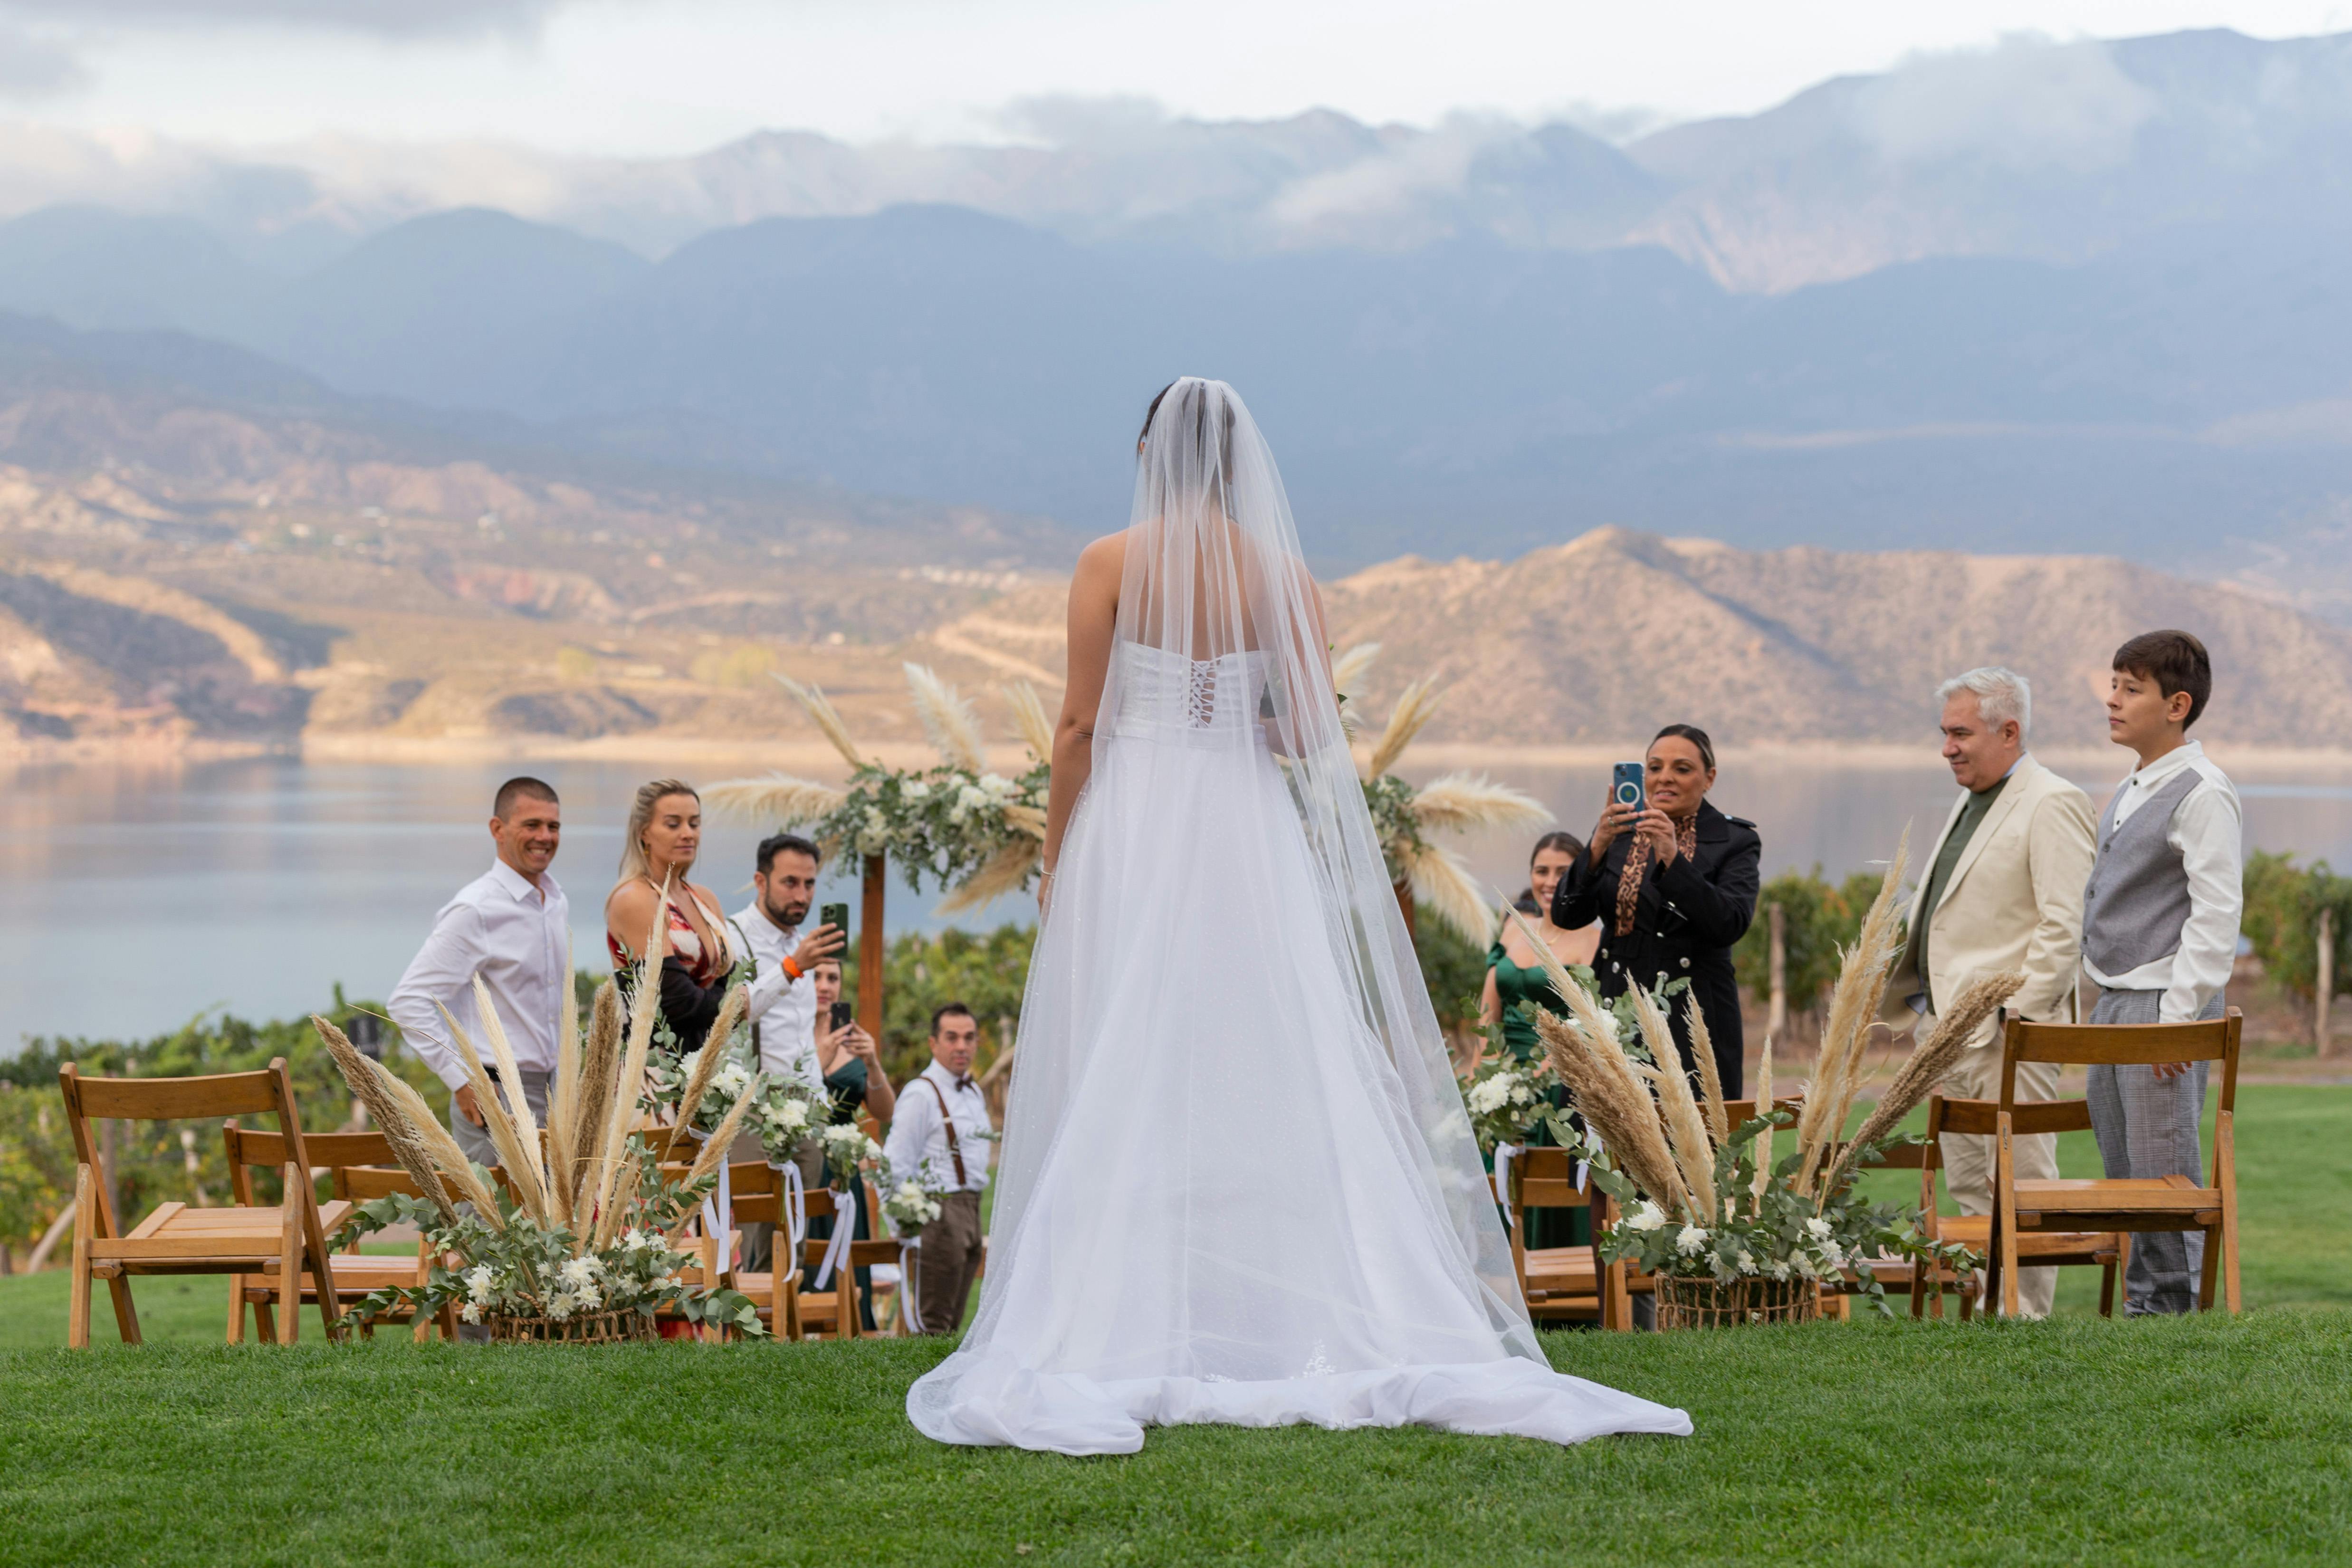 Une vue de dos de la mariée lors de son mariage | Source : Pexels